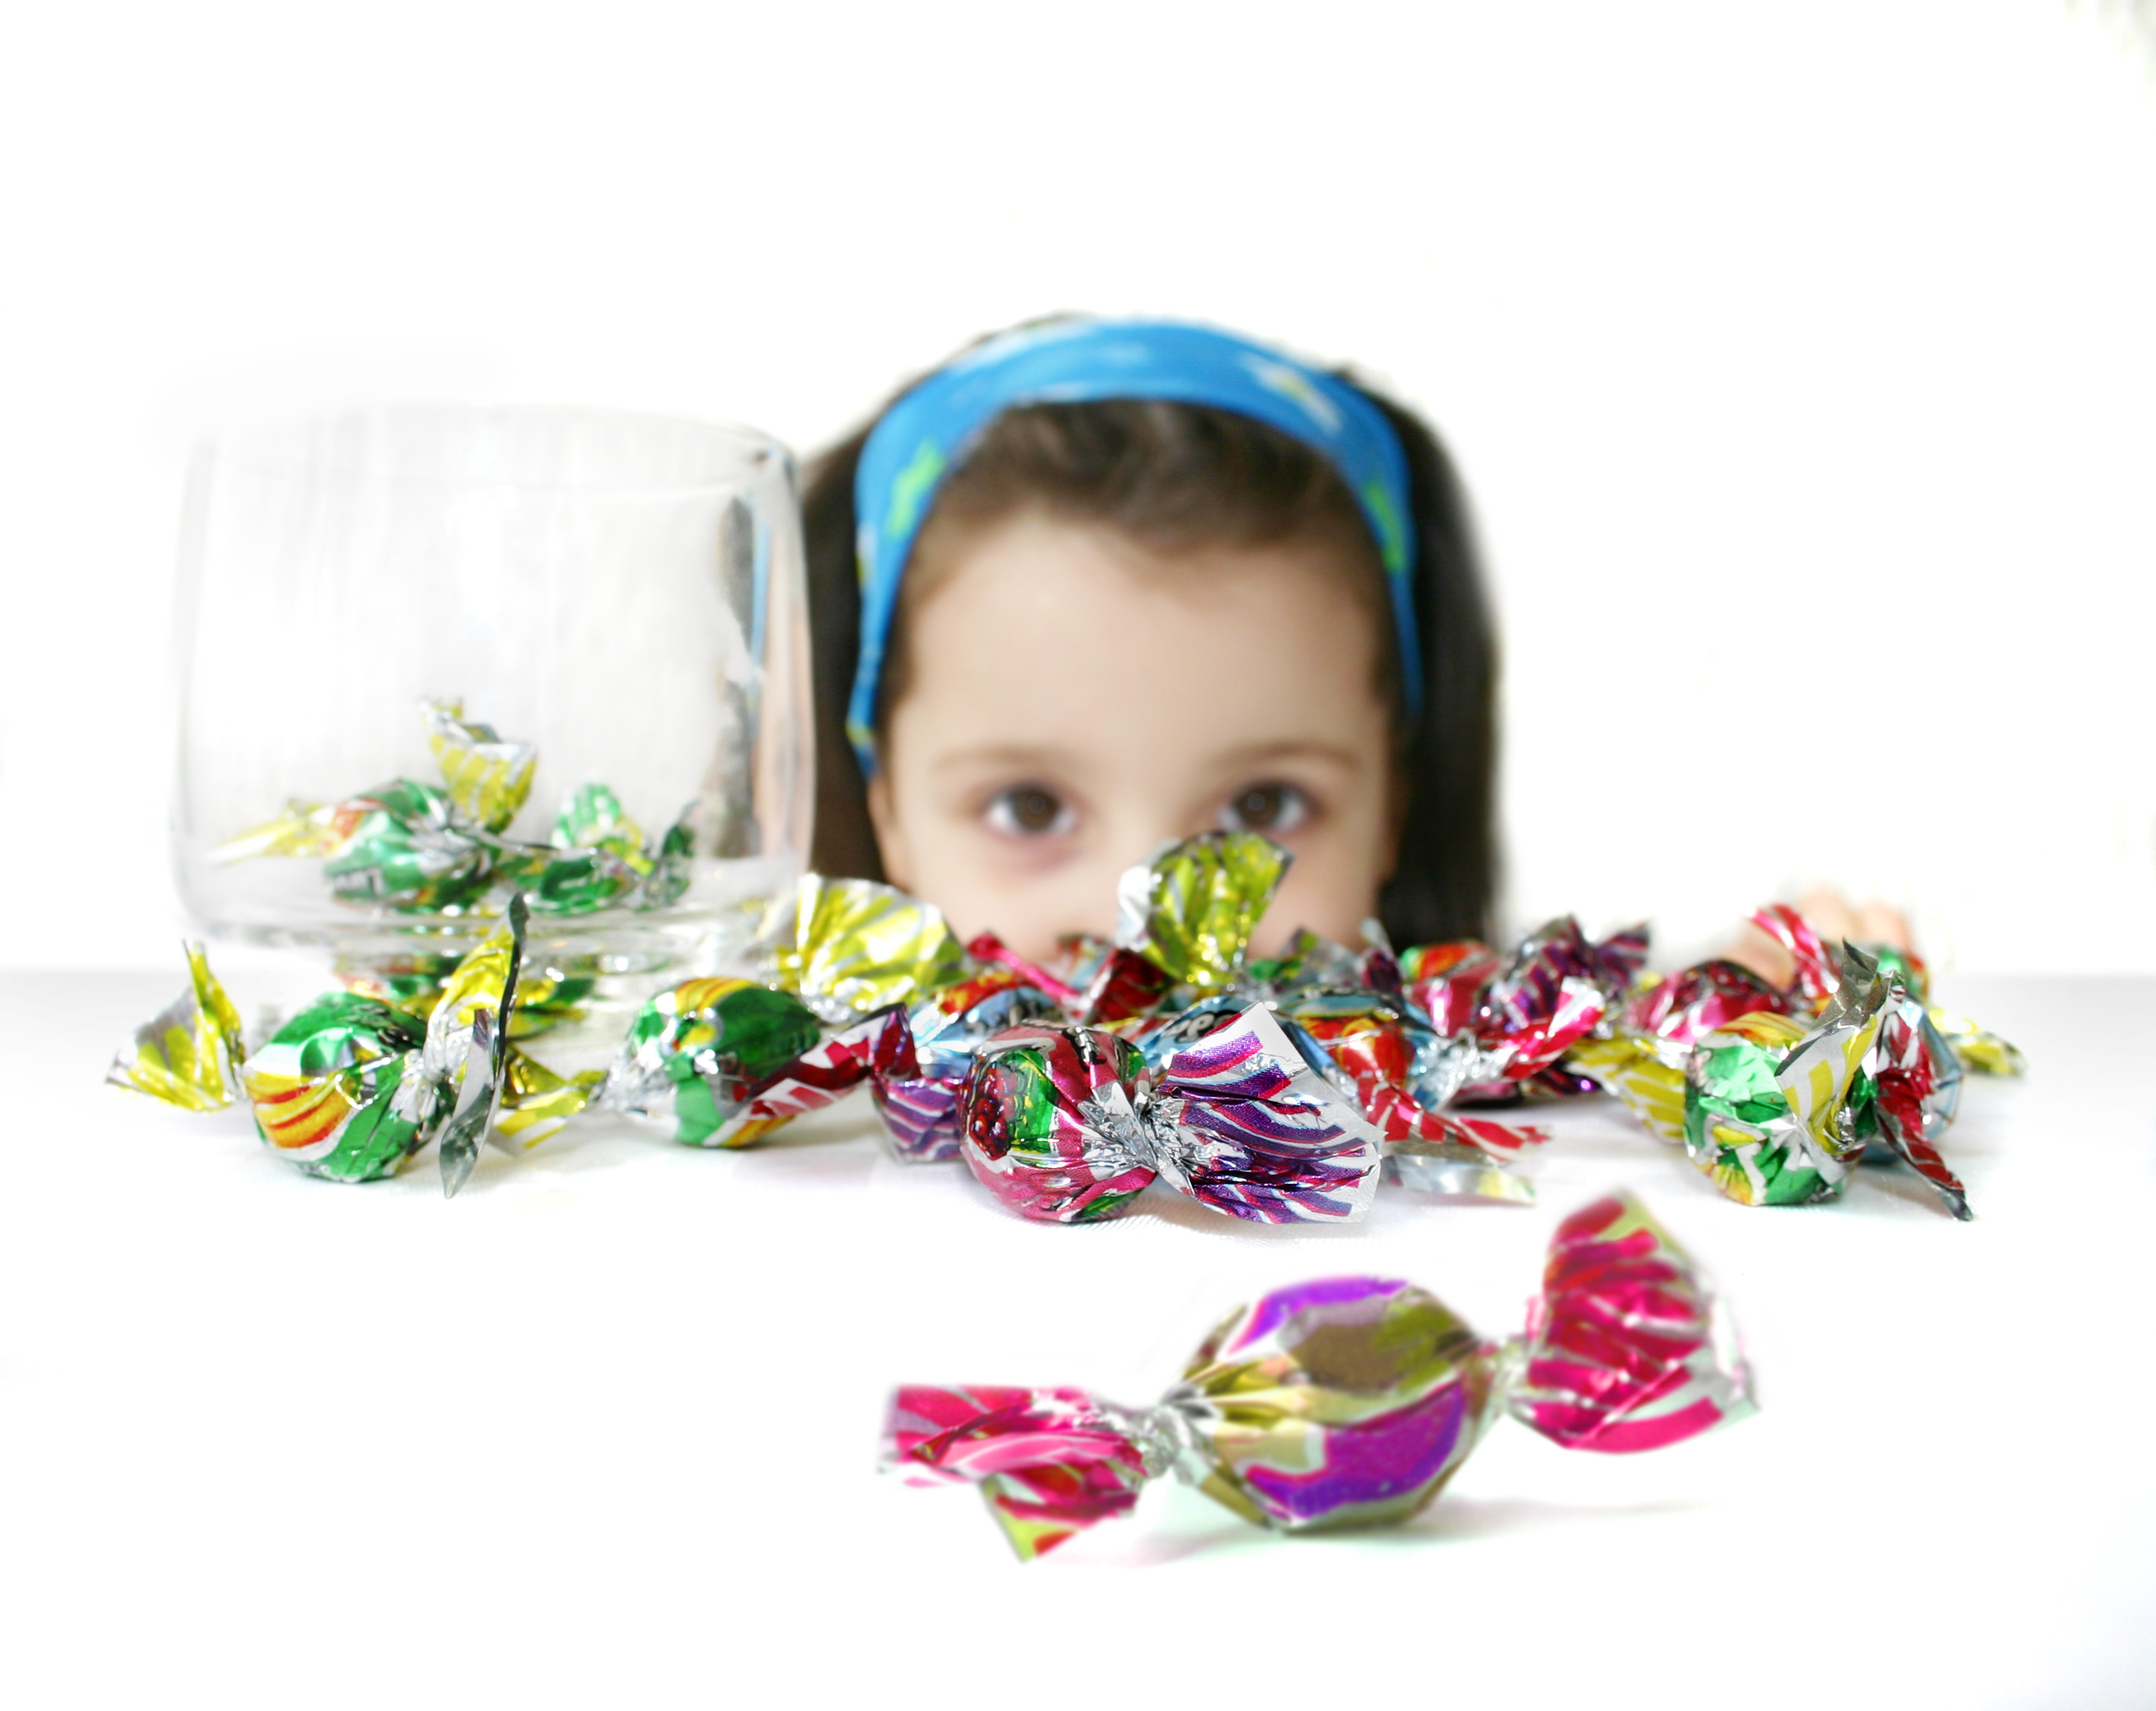 Τα γλυκά δεν παχαίνουν τα παιδιά